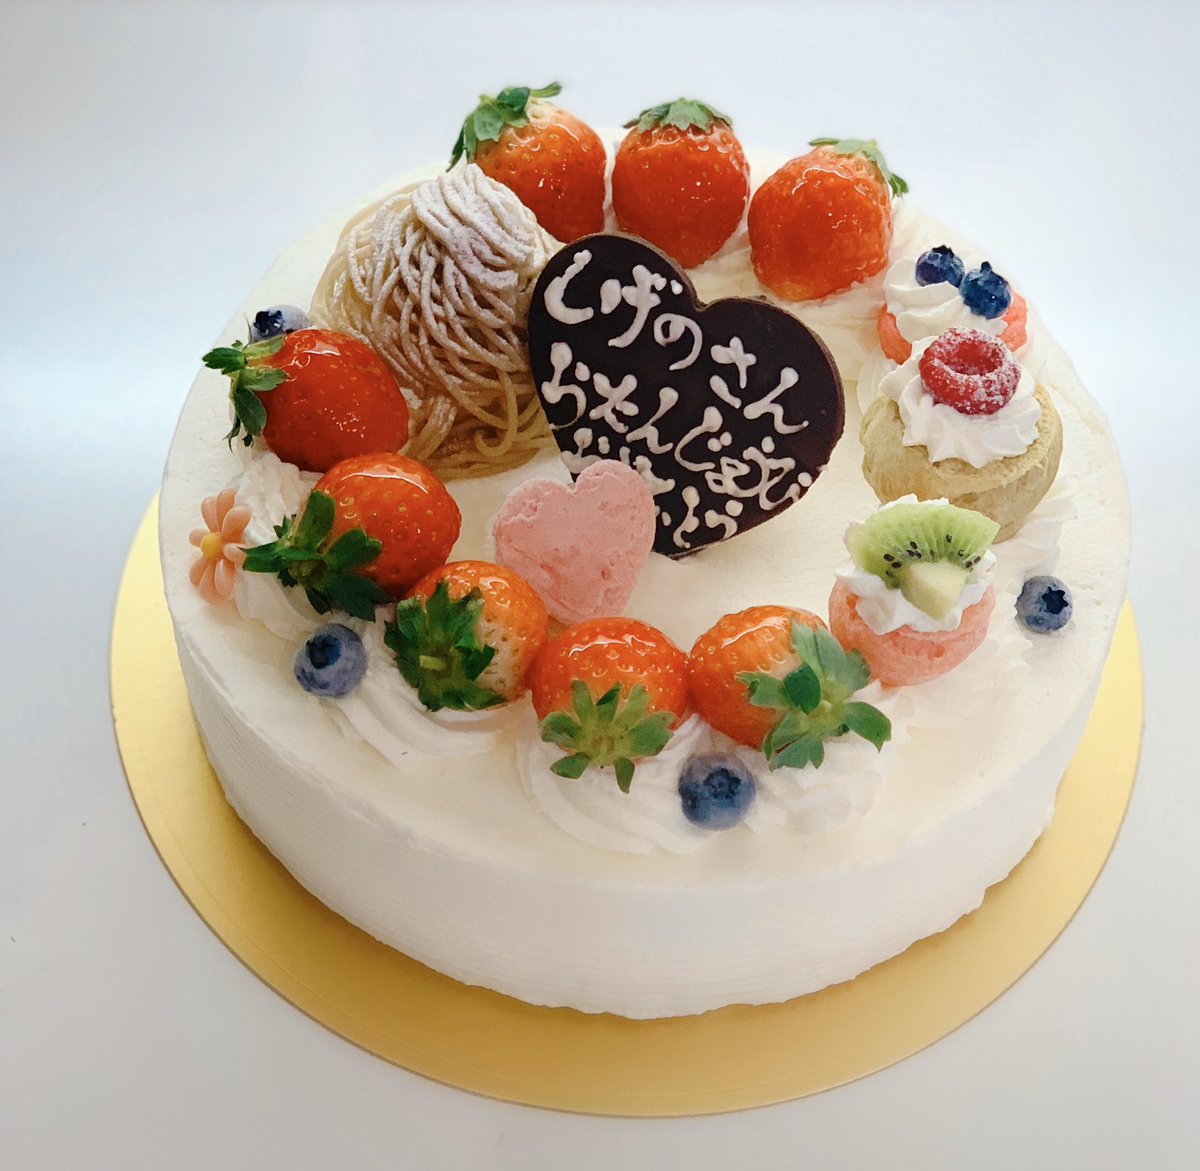 稲沢市 ケーキ屋 パティスリー ラルゴ おはようございます パティスリーラルゴ です 21センチのホールケーキ お誕生日おめでとうございます ラルゴ 稲沢